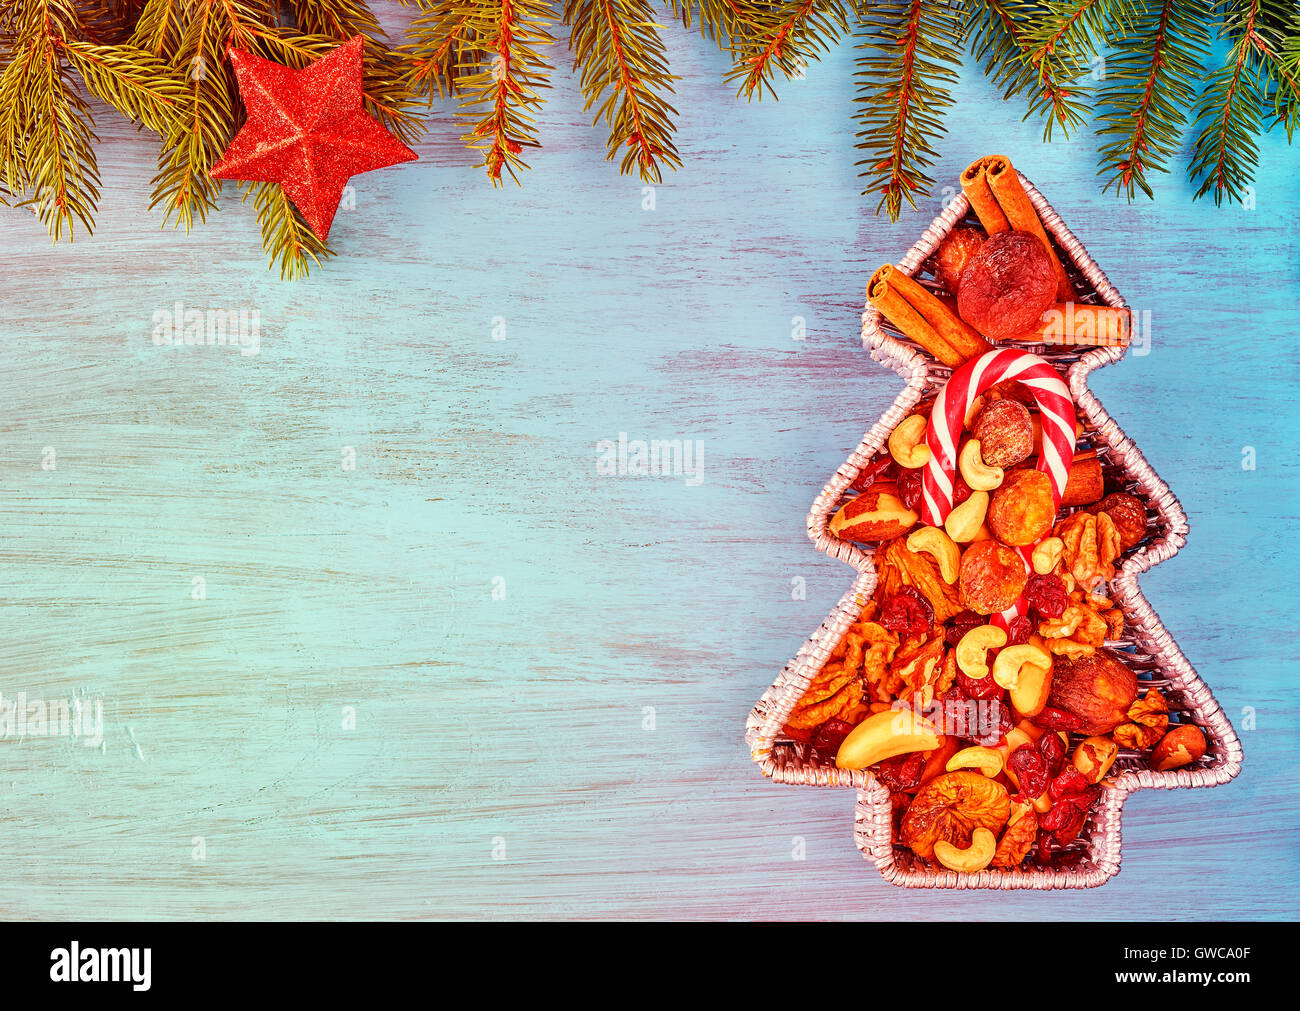 En forme d'arbre de Noël aux tons Vintage récipient rempli de fruits secs sur une table en bois rustique, vue supérieure avec spa de copie Banque D'Images